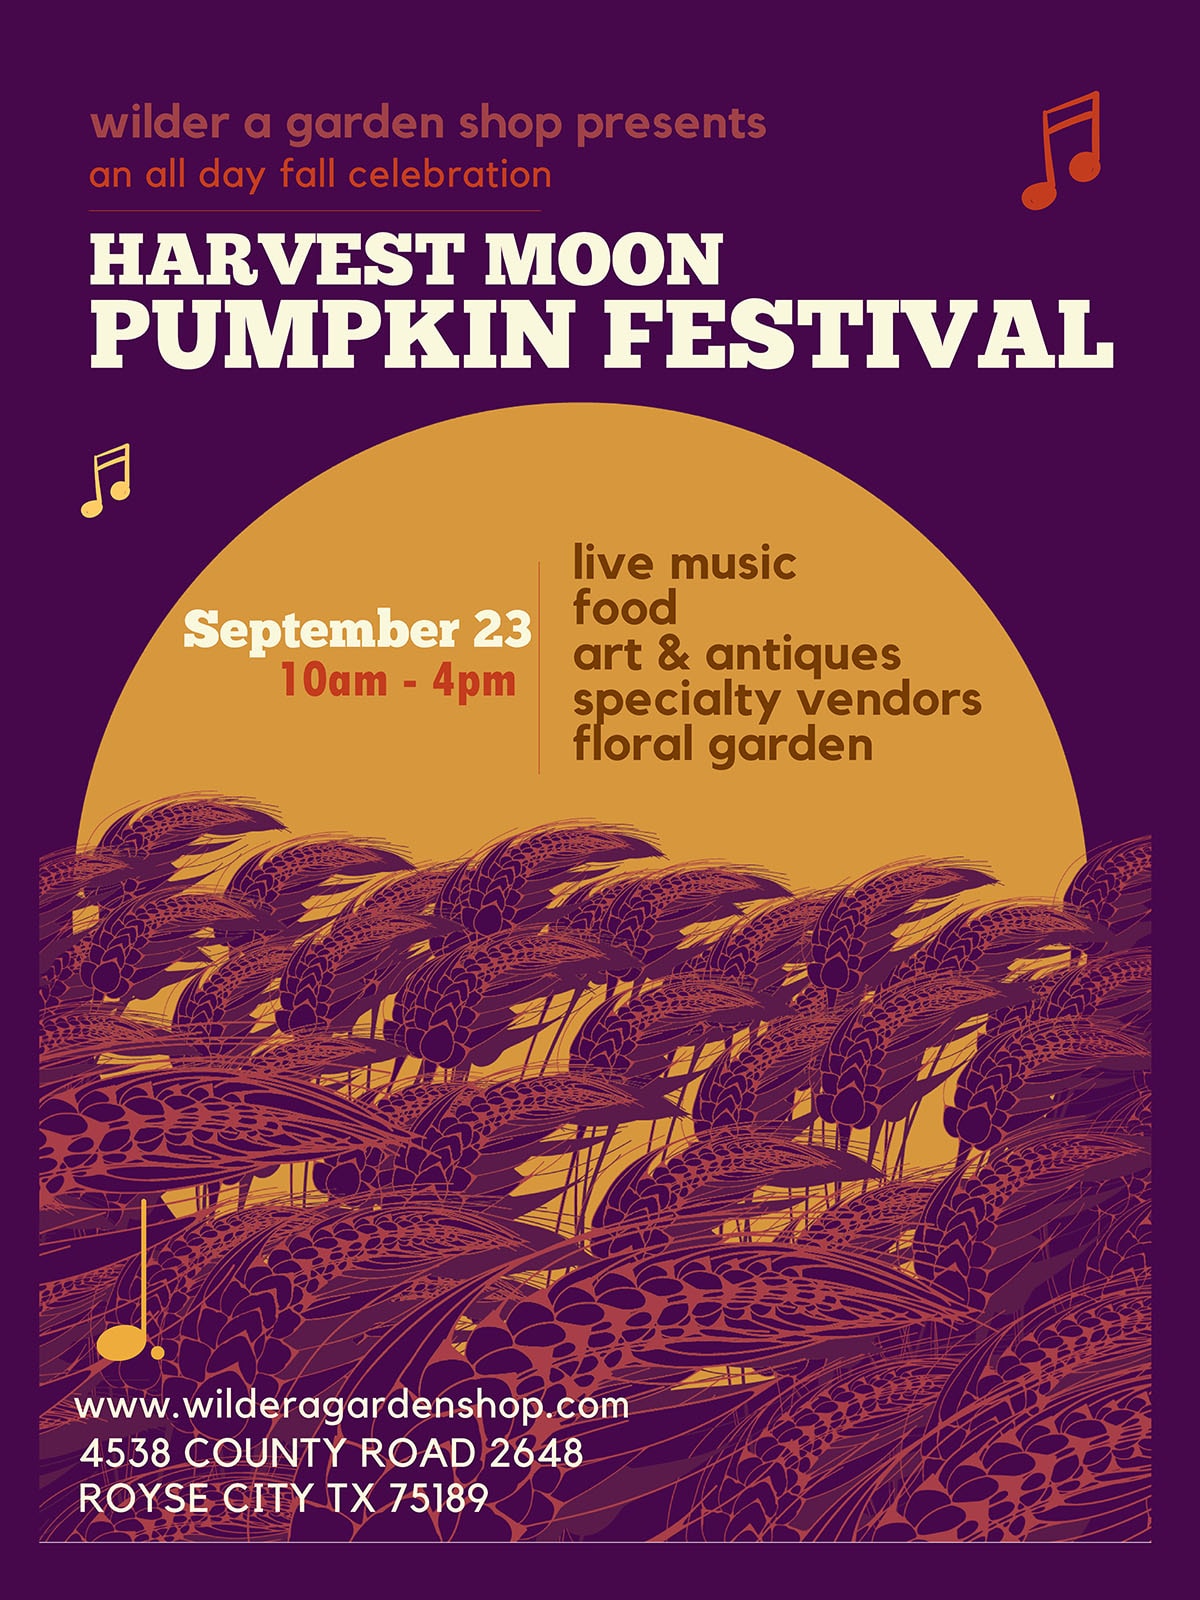 event flyer for Harvest Moon Pumpkin Festival, details at link